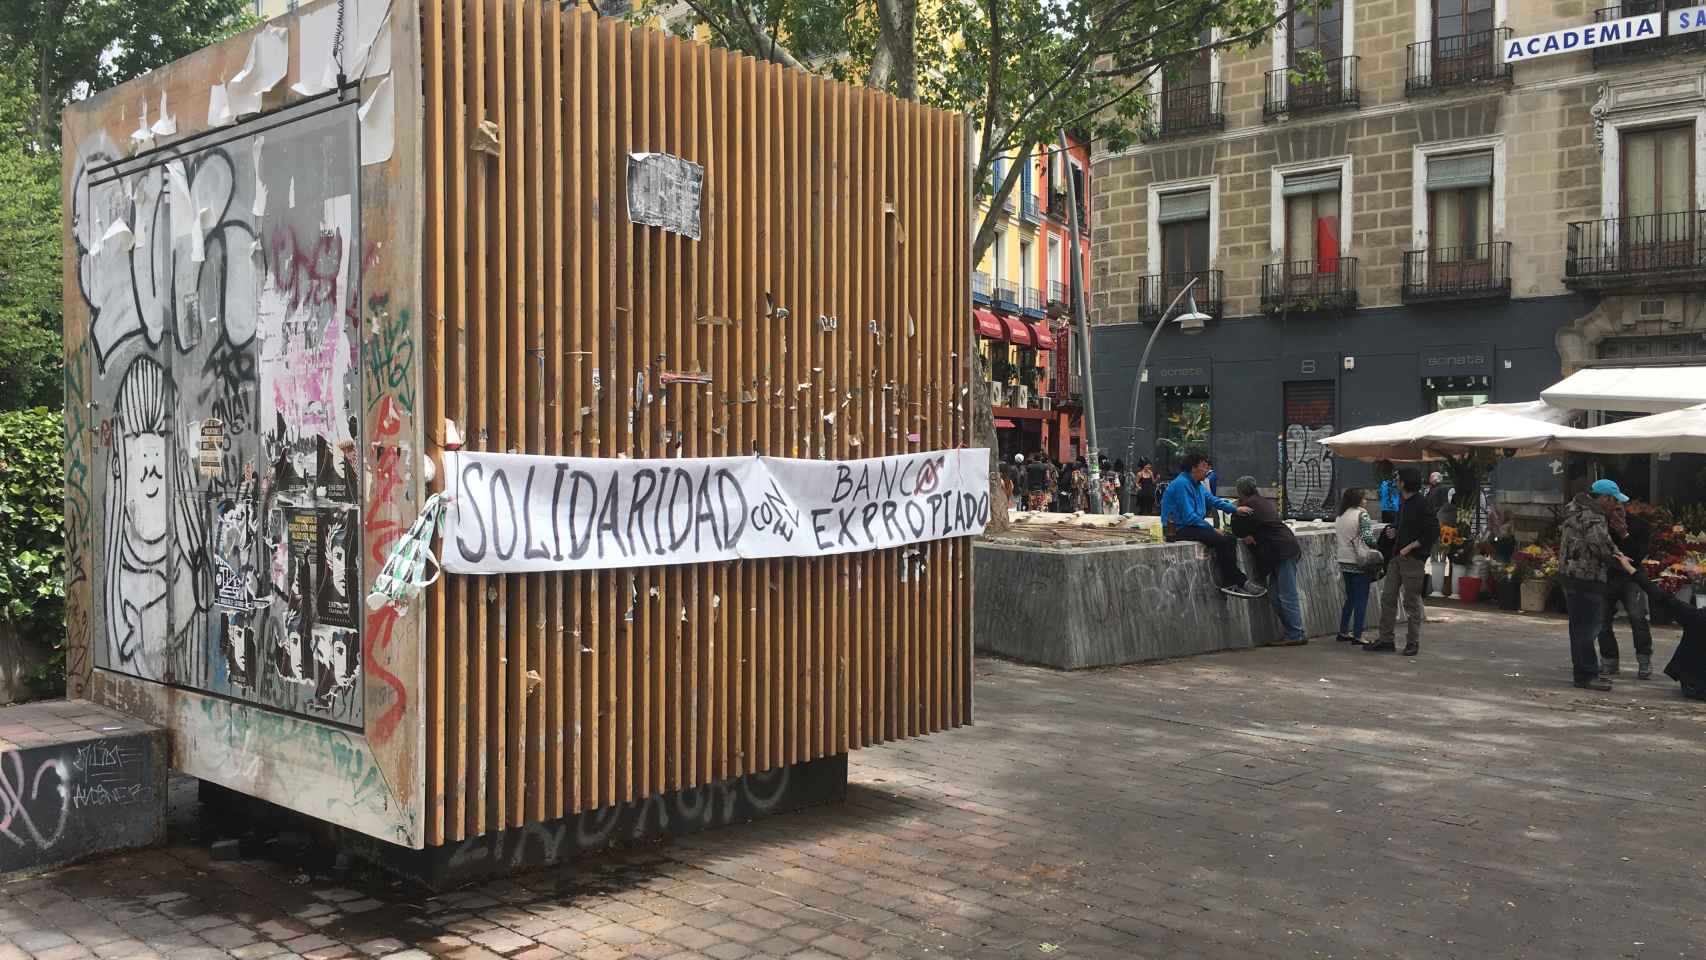 La concentración en apoyo a los okupas de Barcelona fracasa en Madrid